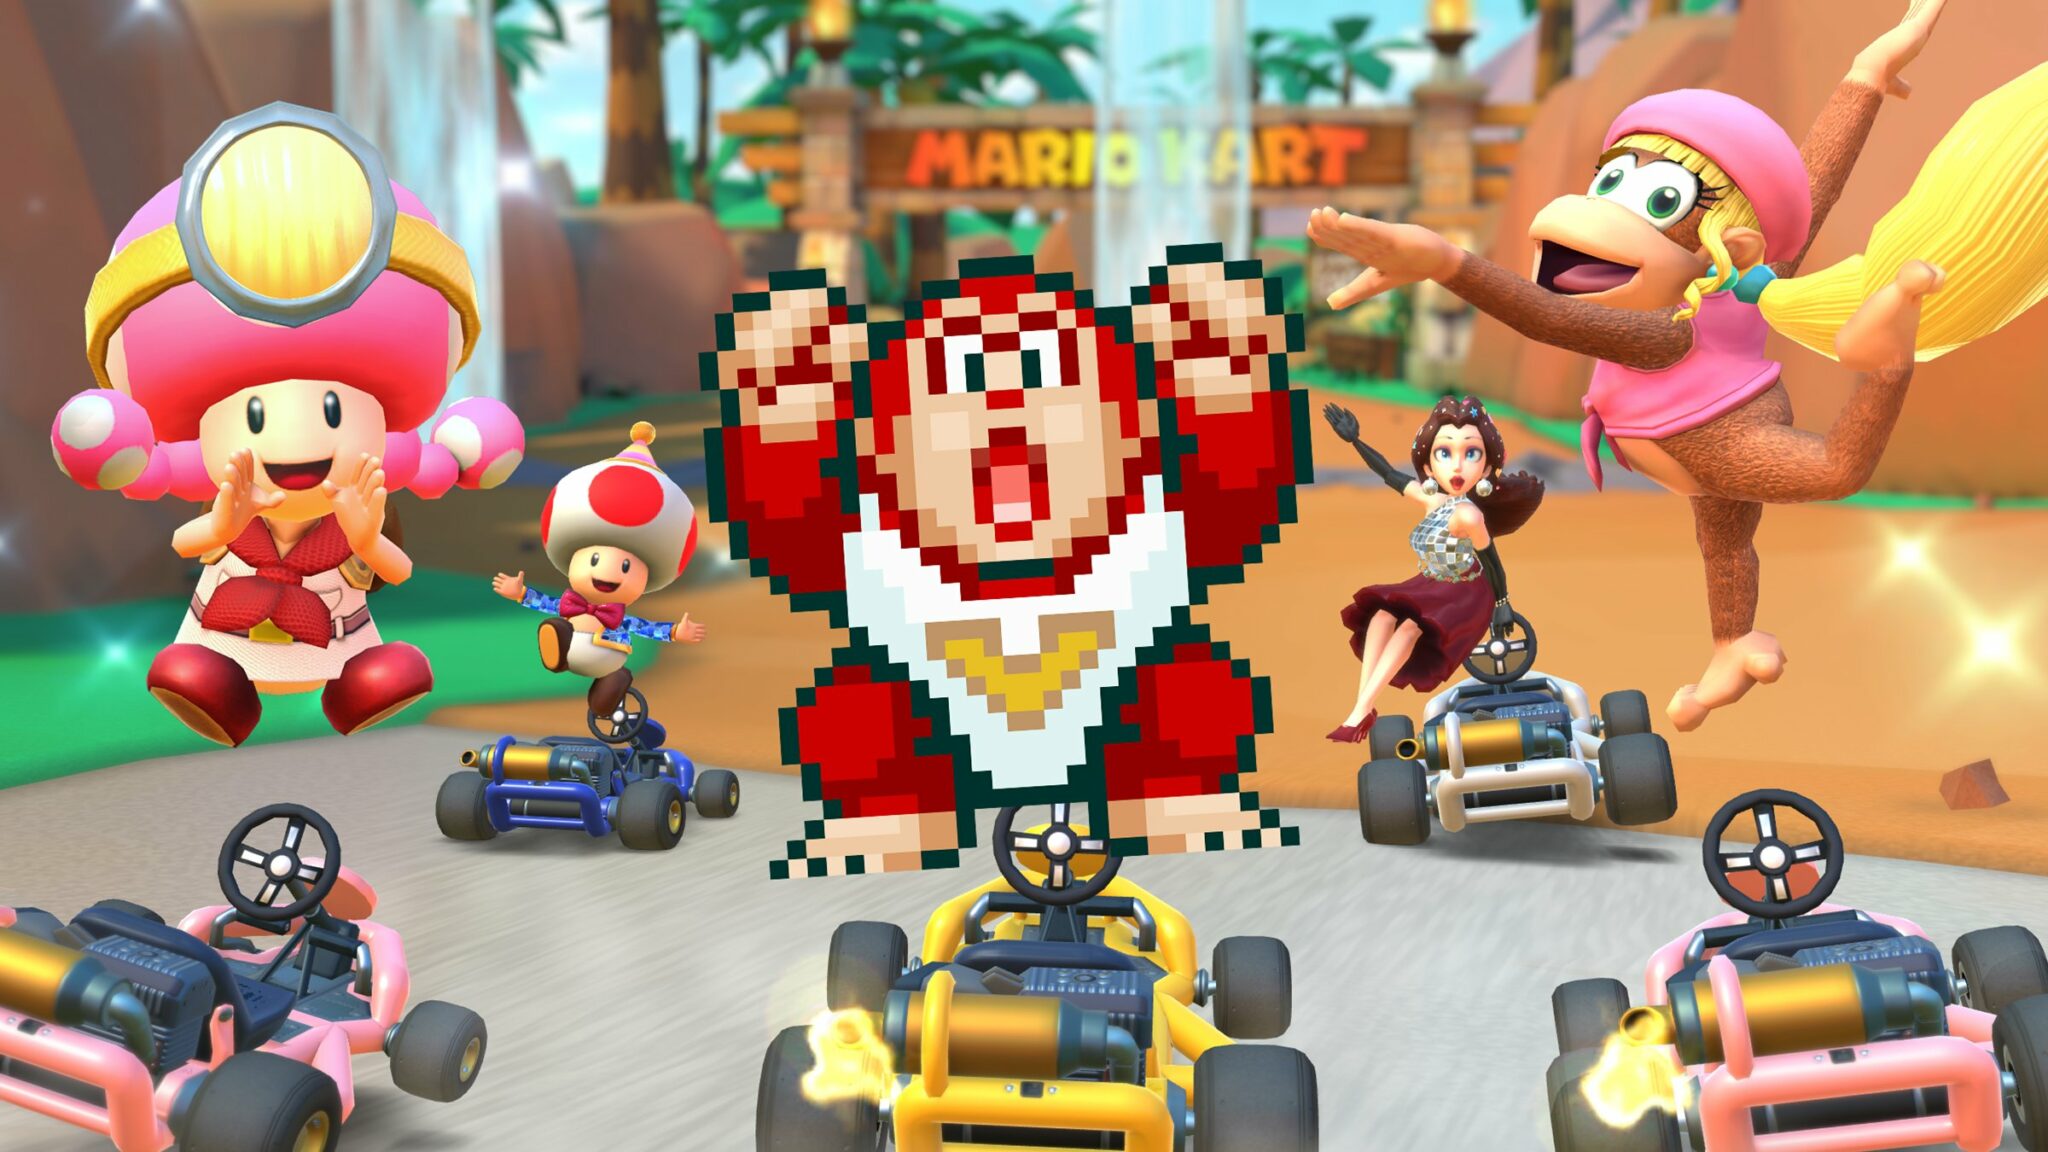 Nuevo evento centrado en Donkey Kong, Mario Kart Tour, GamersRD